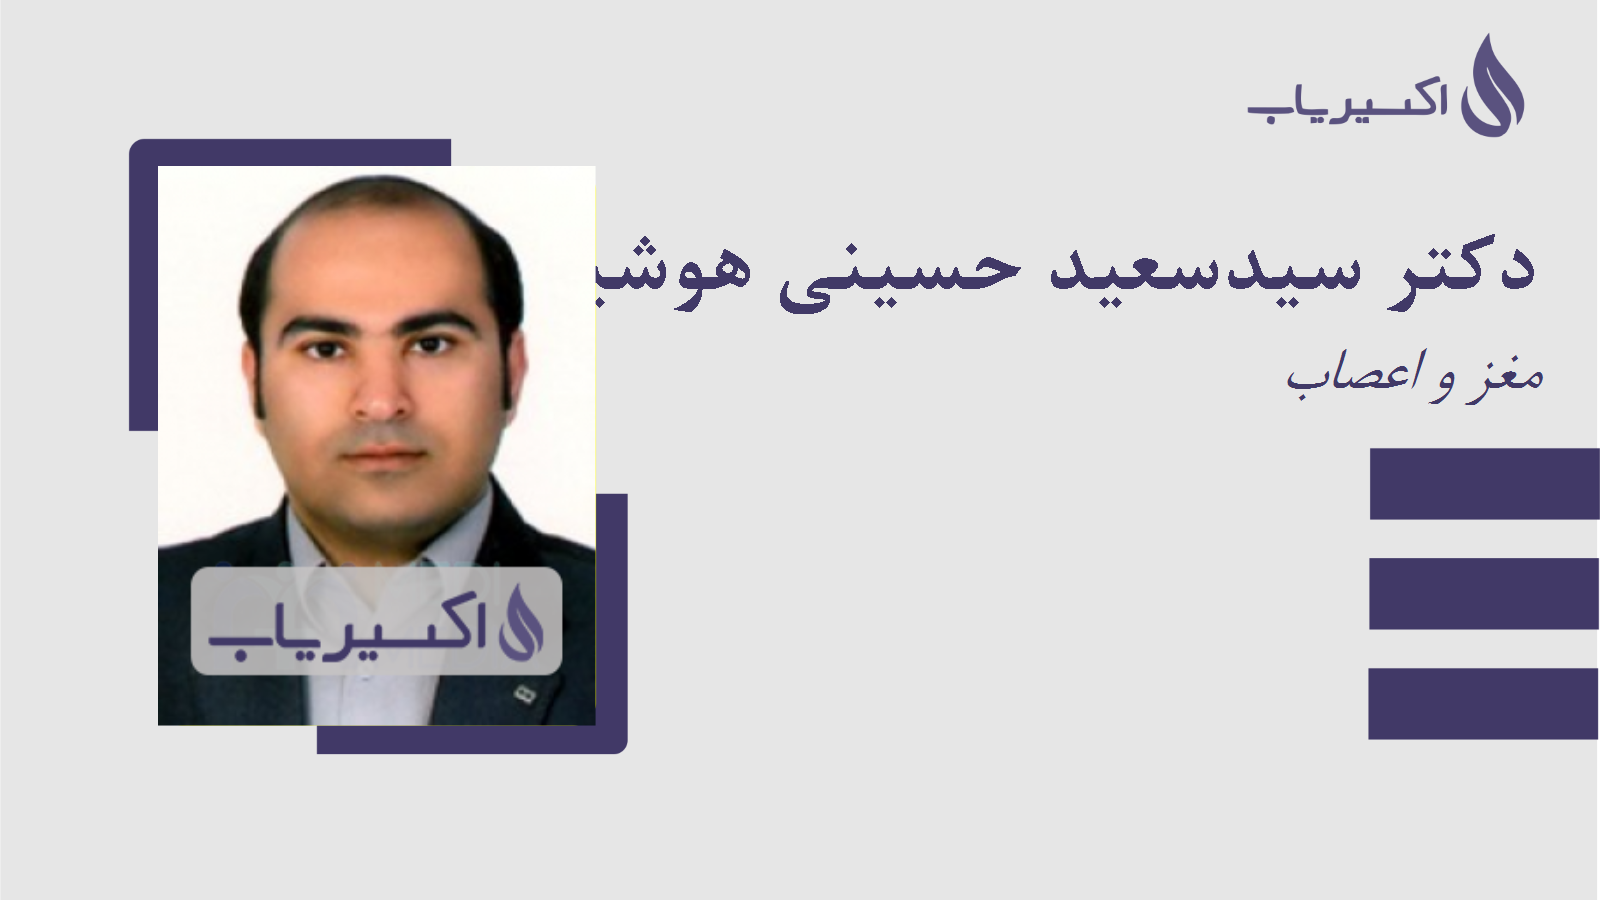 مطب دکتر سیدسعید حسینی هوشیار